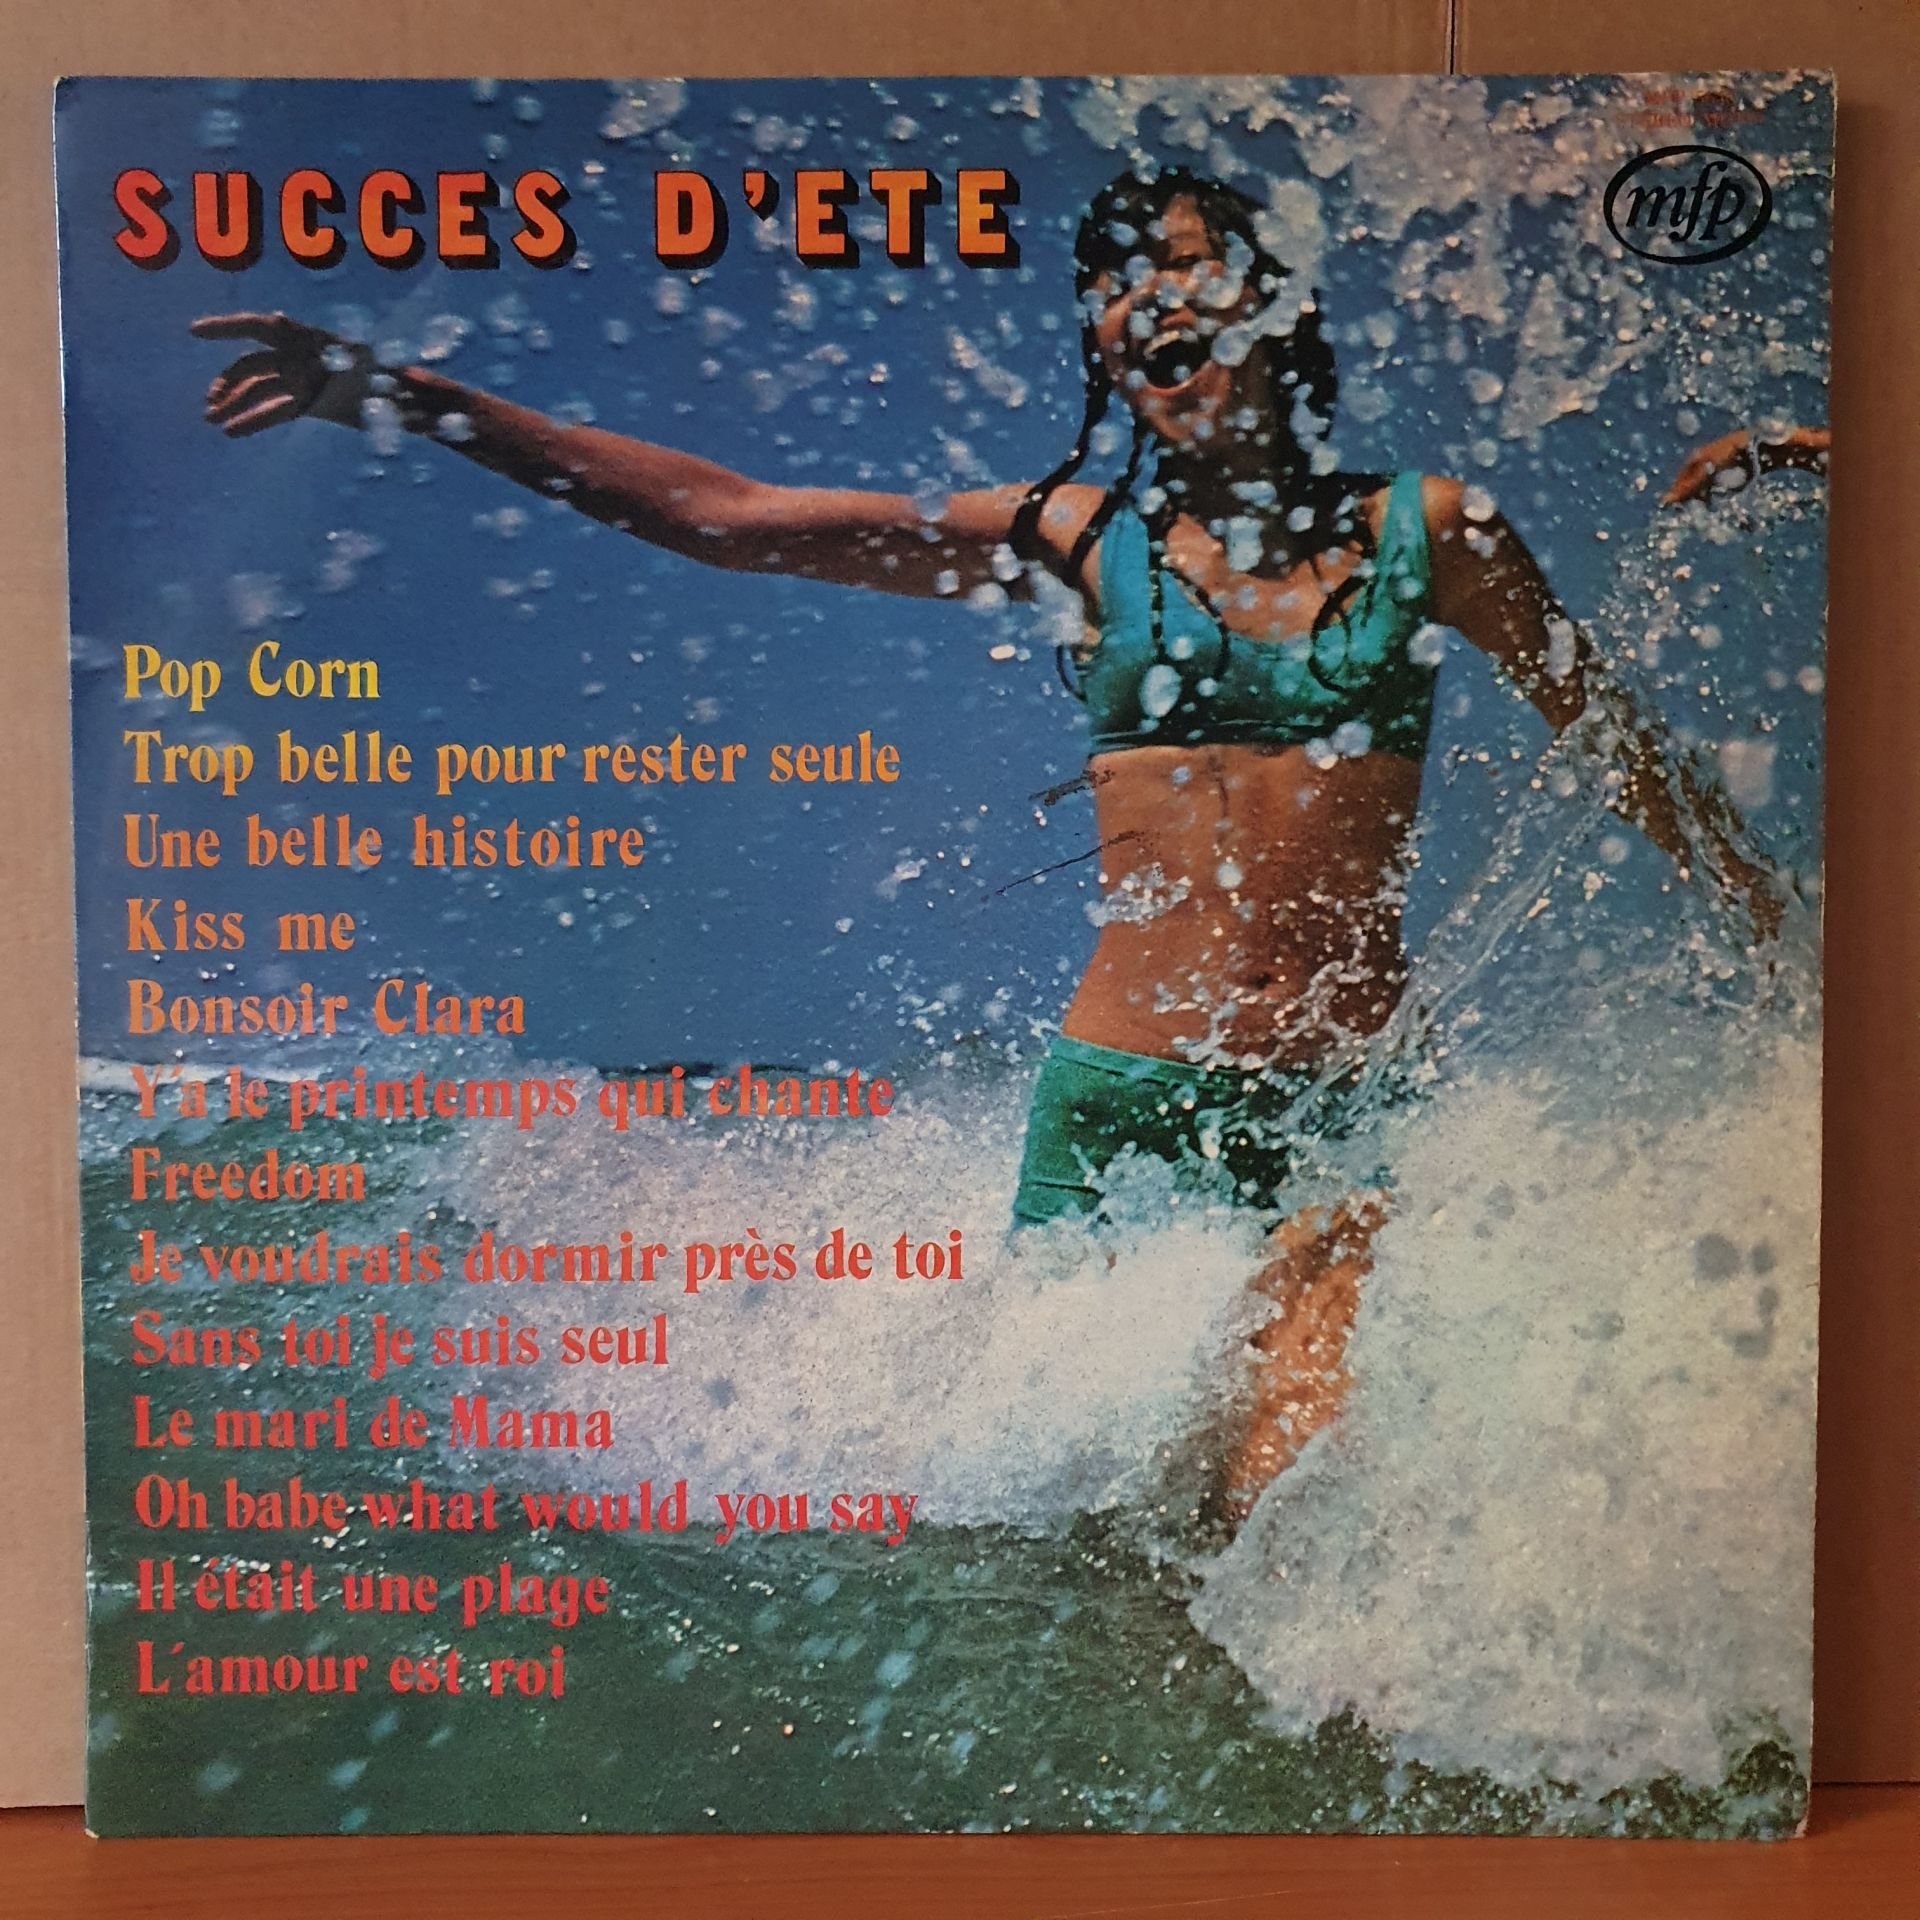 SUCCES D'ETE / POPCORN, KISS ME, FREEDOM, UNE BELLE HISTOIRE, BONSOIR CLARA (1972) - LP 2.EL PLAK